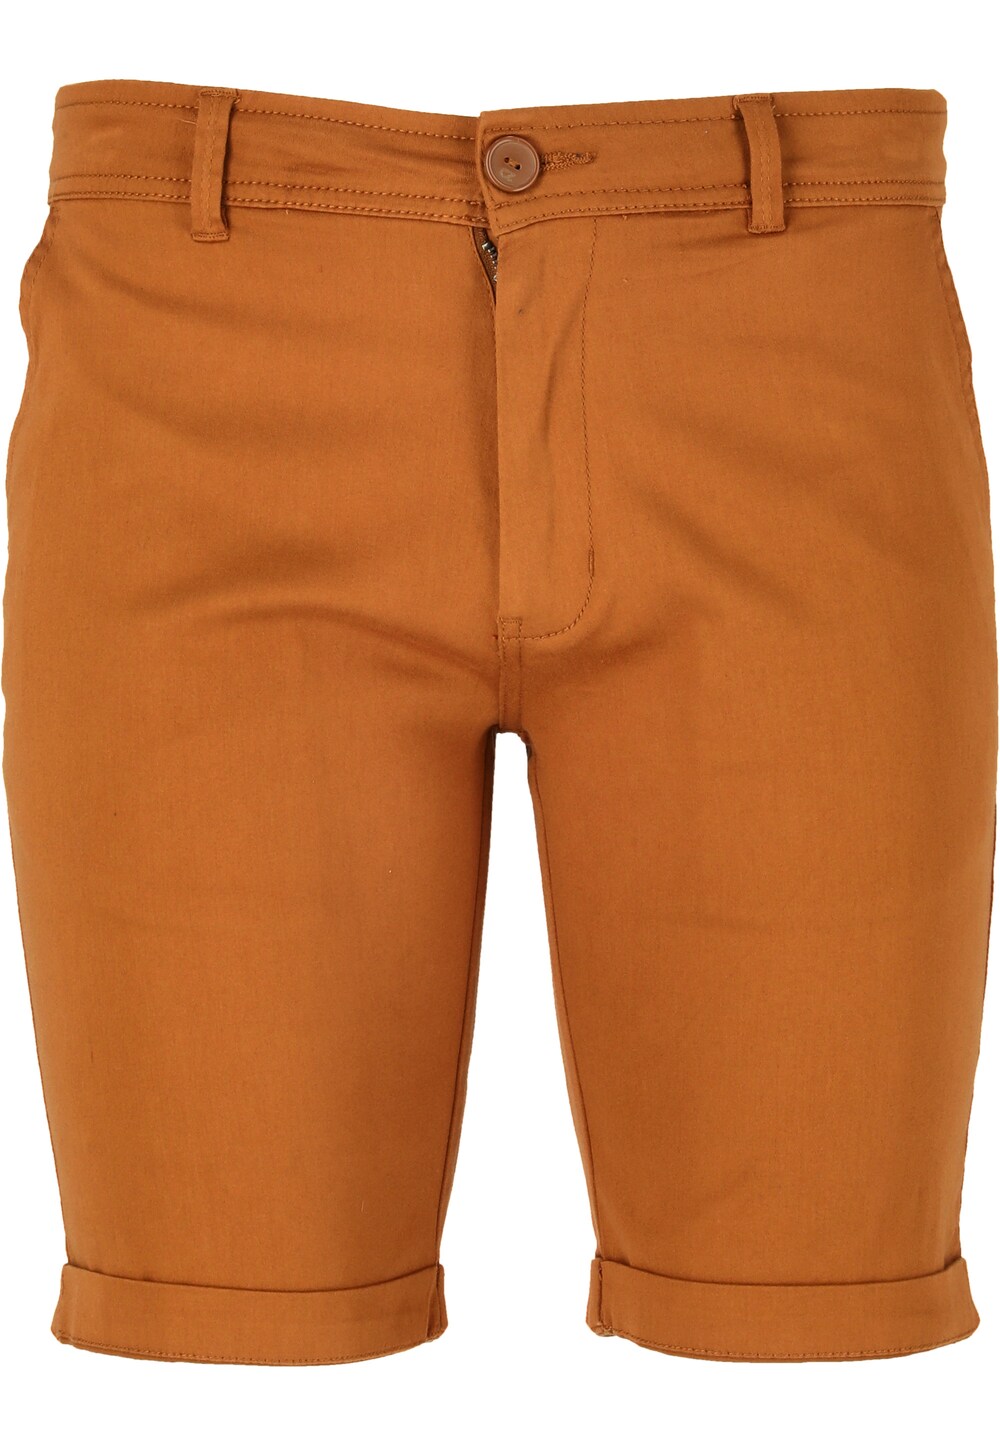 Обычные брюки Cruz Jerryne, апельсин обычные брюки cruz jerryne коричневый